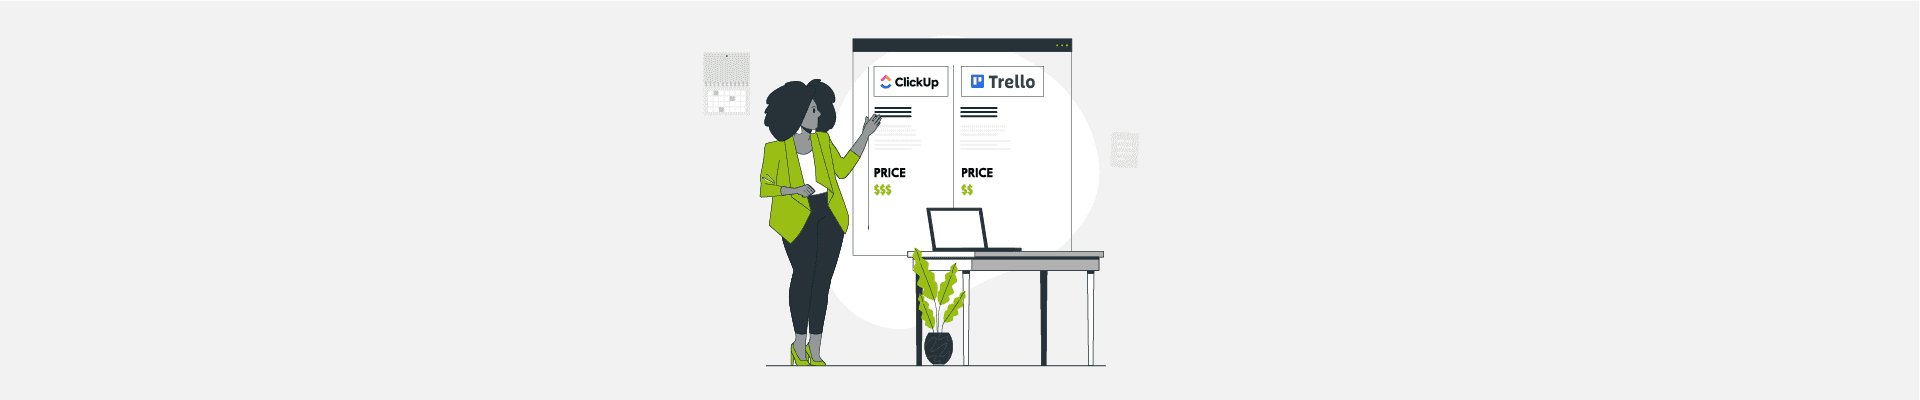 Trello vs ClickUp Feature and Pricing Comparison